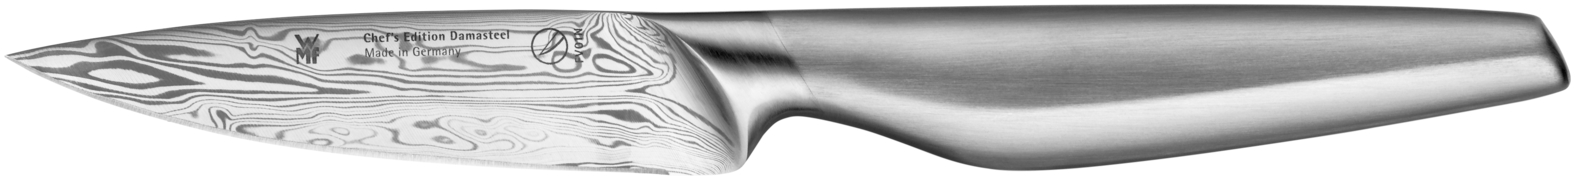 Универсальный нож Chef's Edition Damasteel 10см. шлейф универсальный 24pin шаг 1мм длина 20см